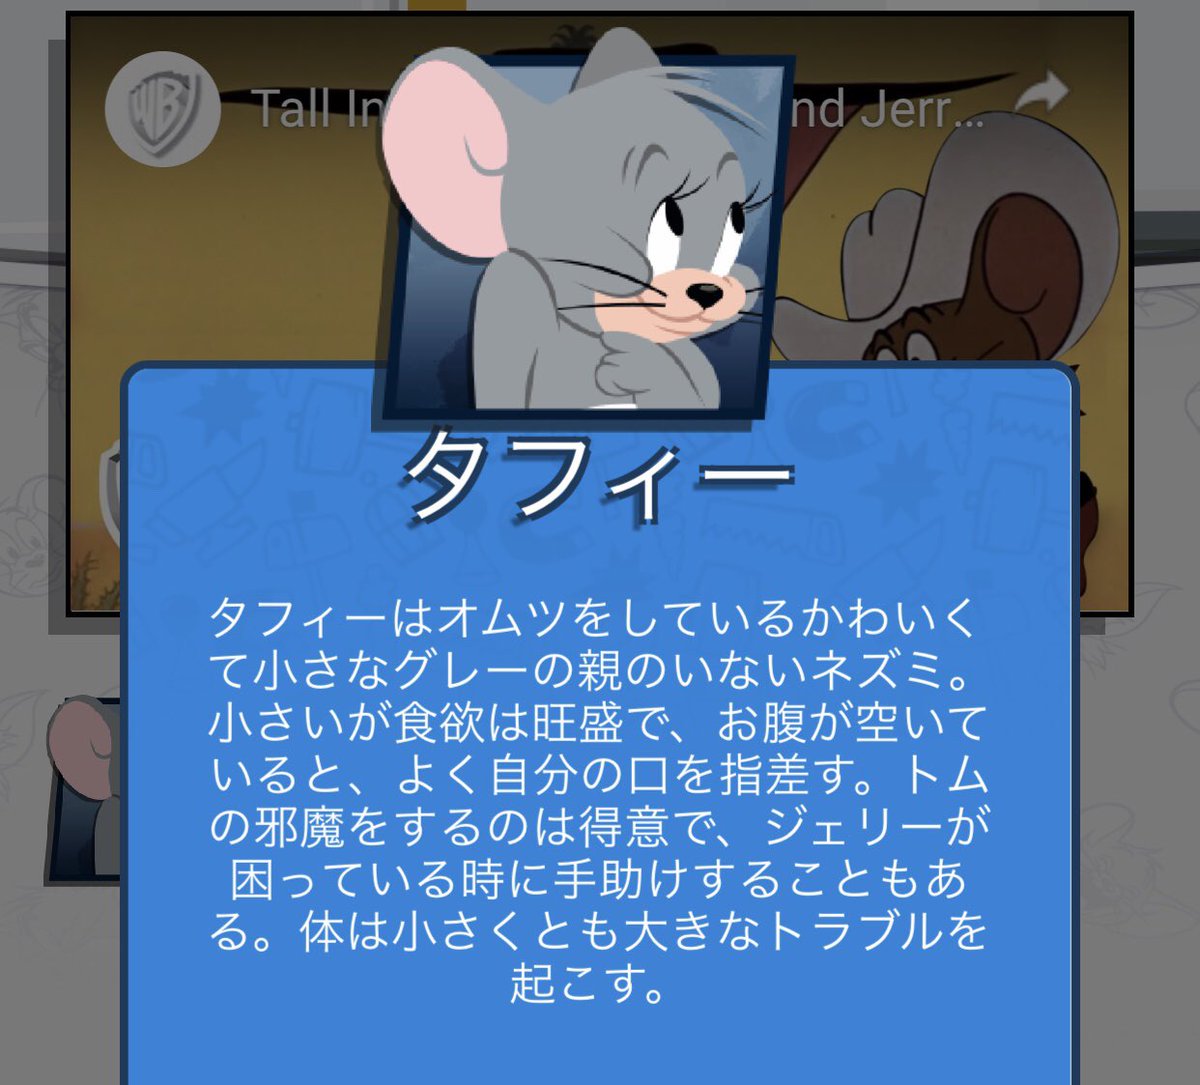 Isoroku Tom And Jerryのnibbles Taffy のおむつのデザインがクソかわいい タフィーのちっちゃいむちぽよ感も最高にかわいい この世界観 いつ観ても好きだわwwww T Co M6bmvbw0nu Twitter